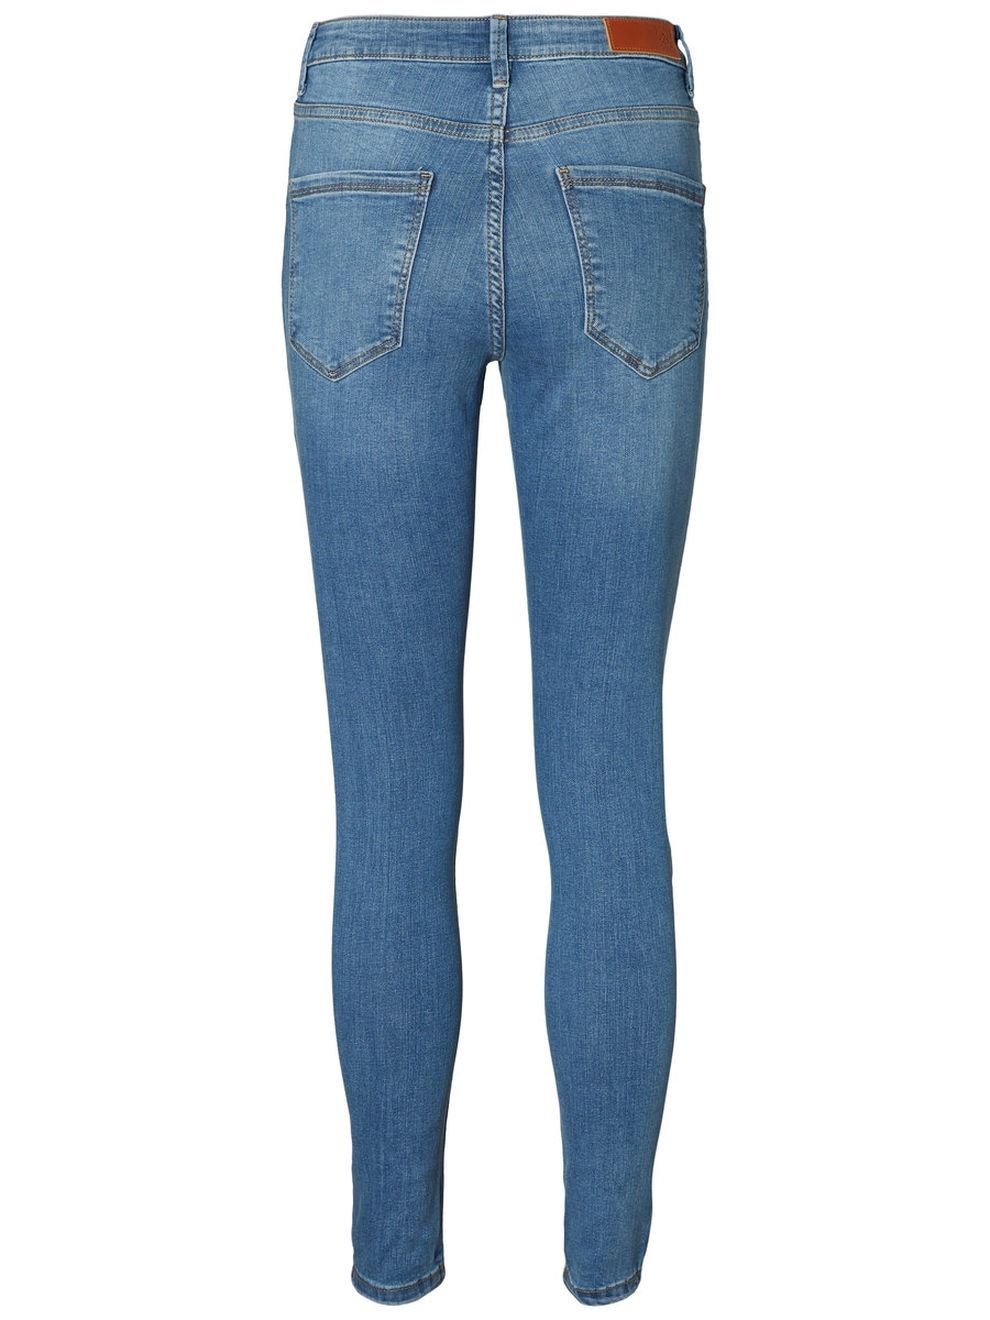 Vero Moda VMSOPHIA Taille haute Skinny Fit Jeans -Light Blue Denim - 10193330